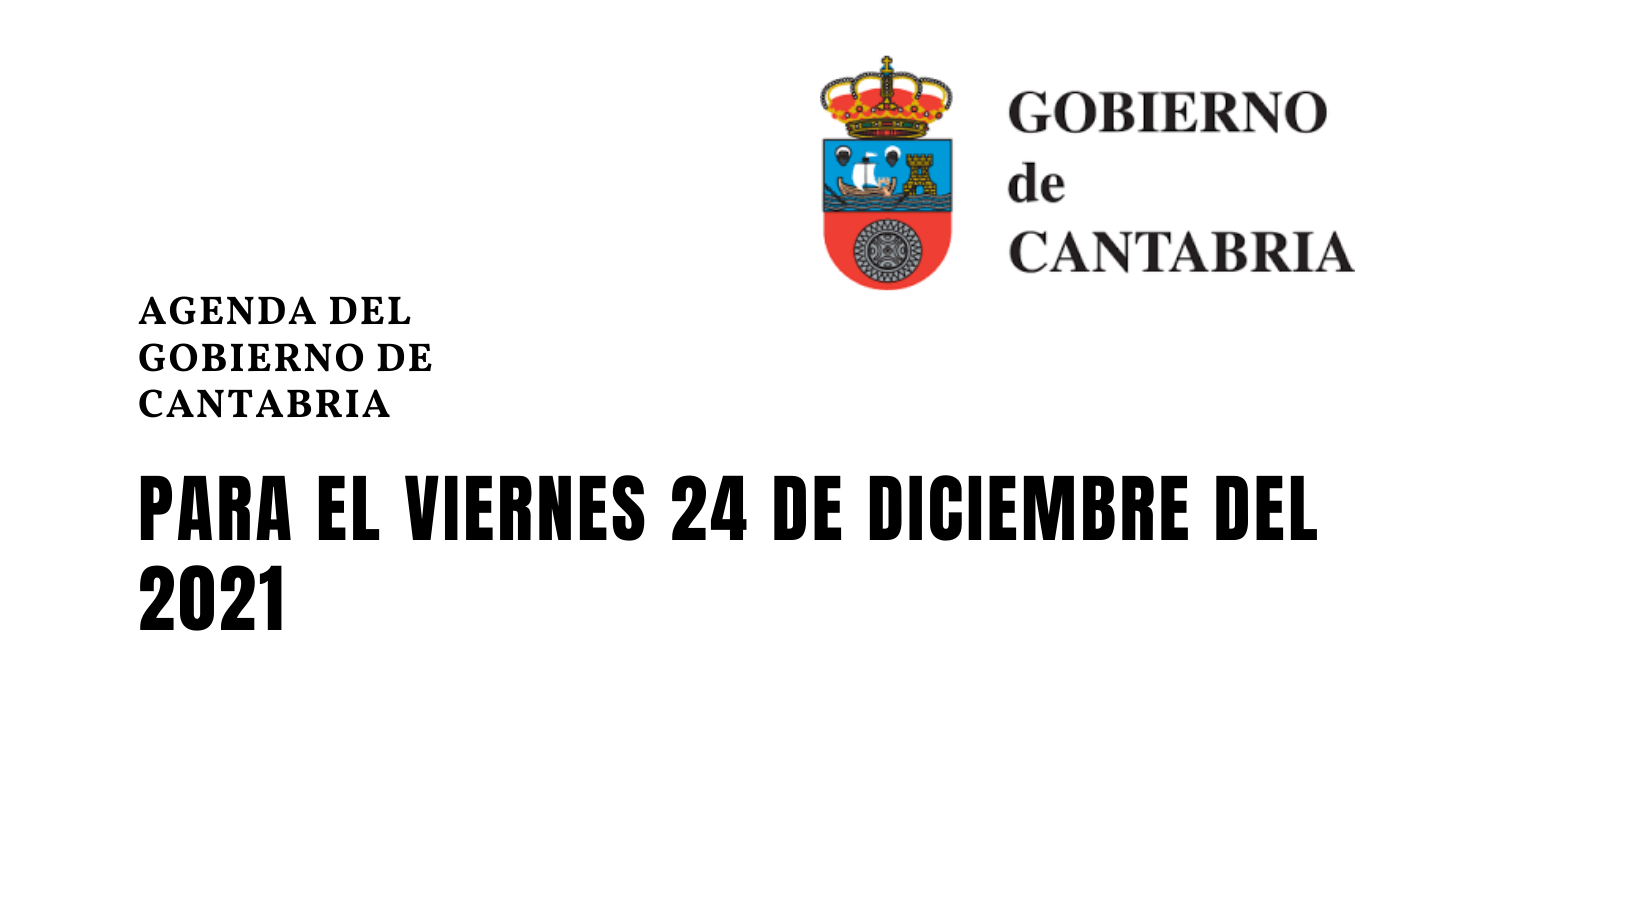 Agenda del Gobierno de Cantabria para el viernes 24 de diciembre del 2021.